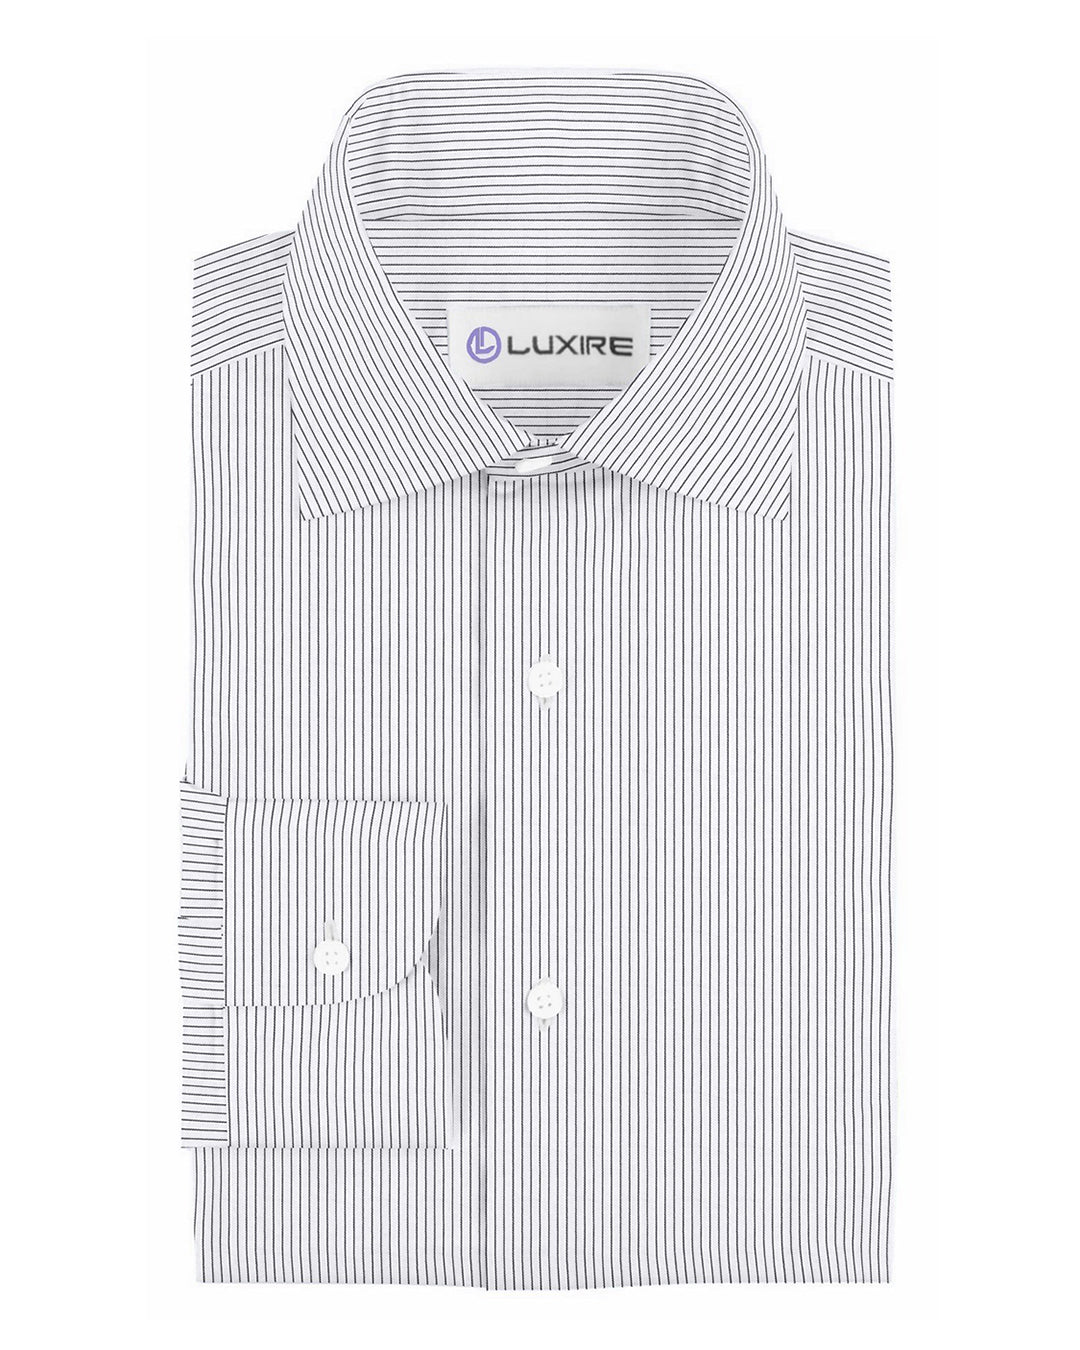 Luxire Presto: Monti White & Black Pin Stripes Shirt